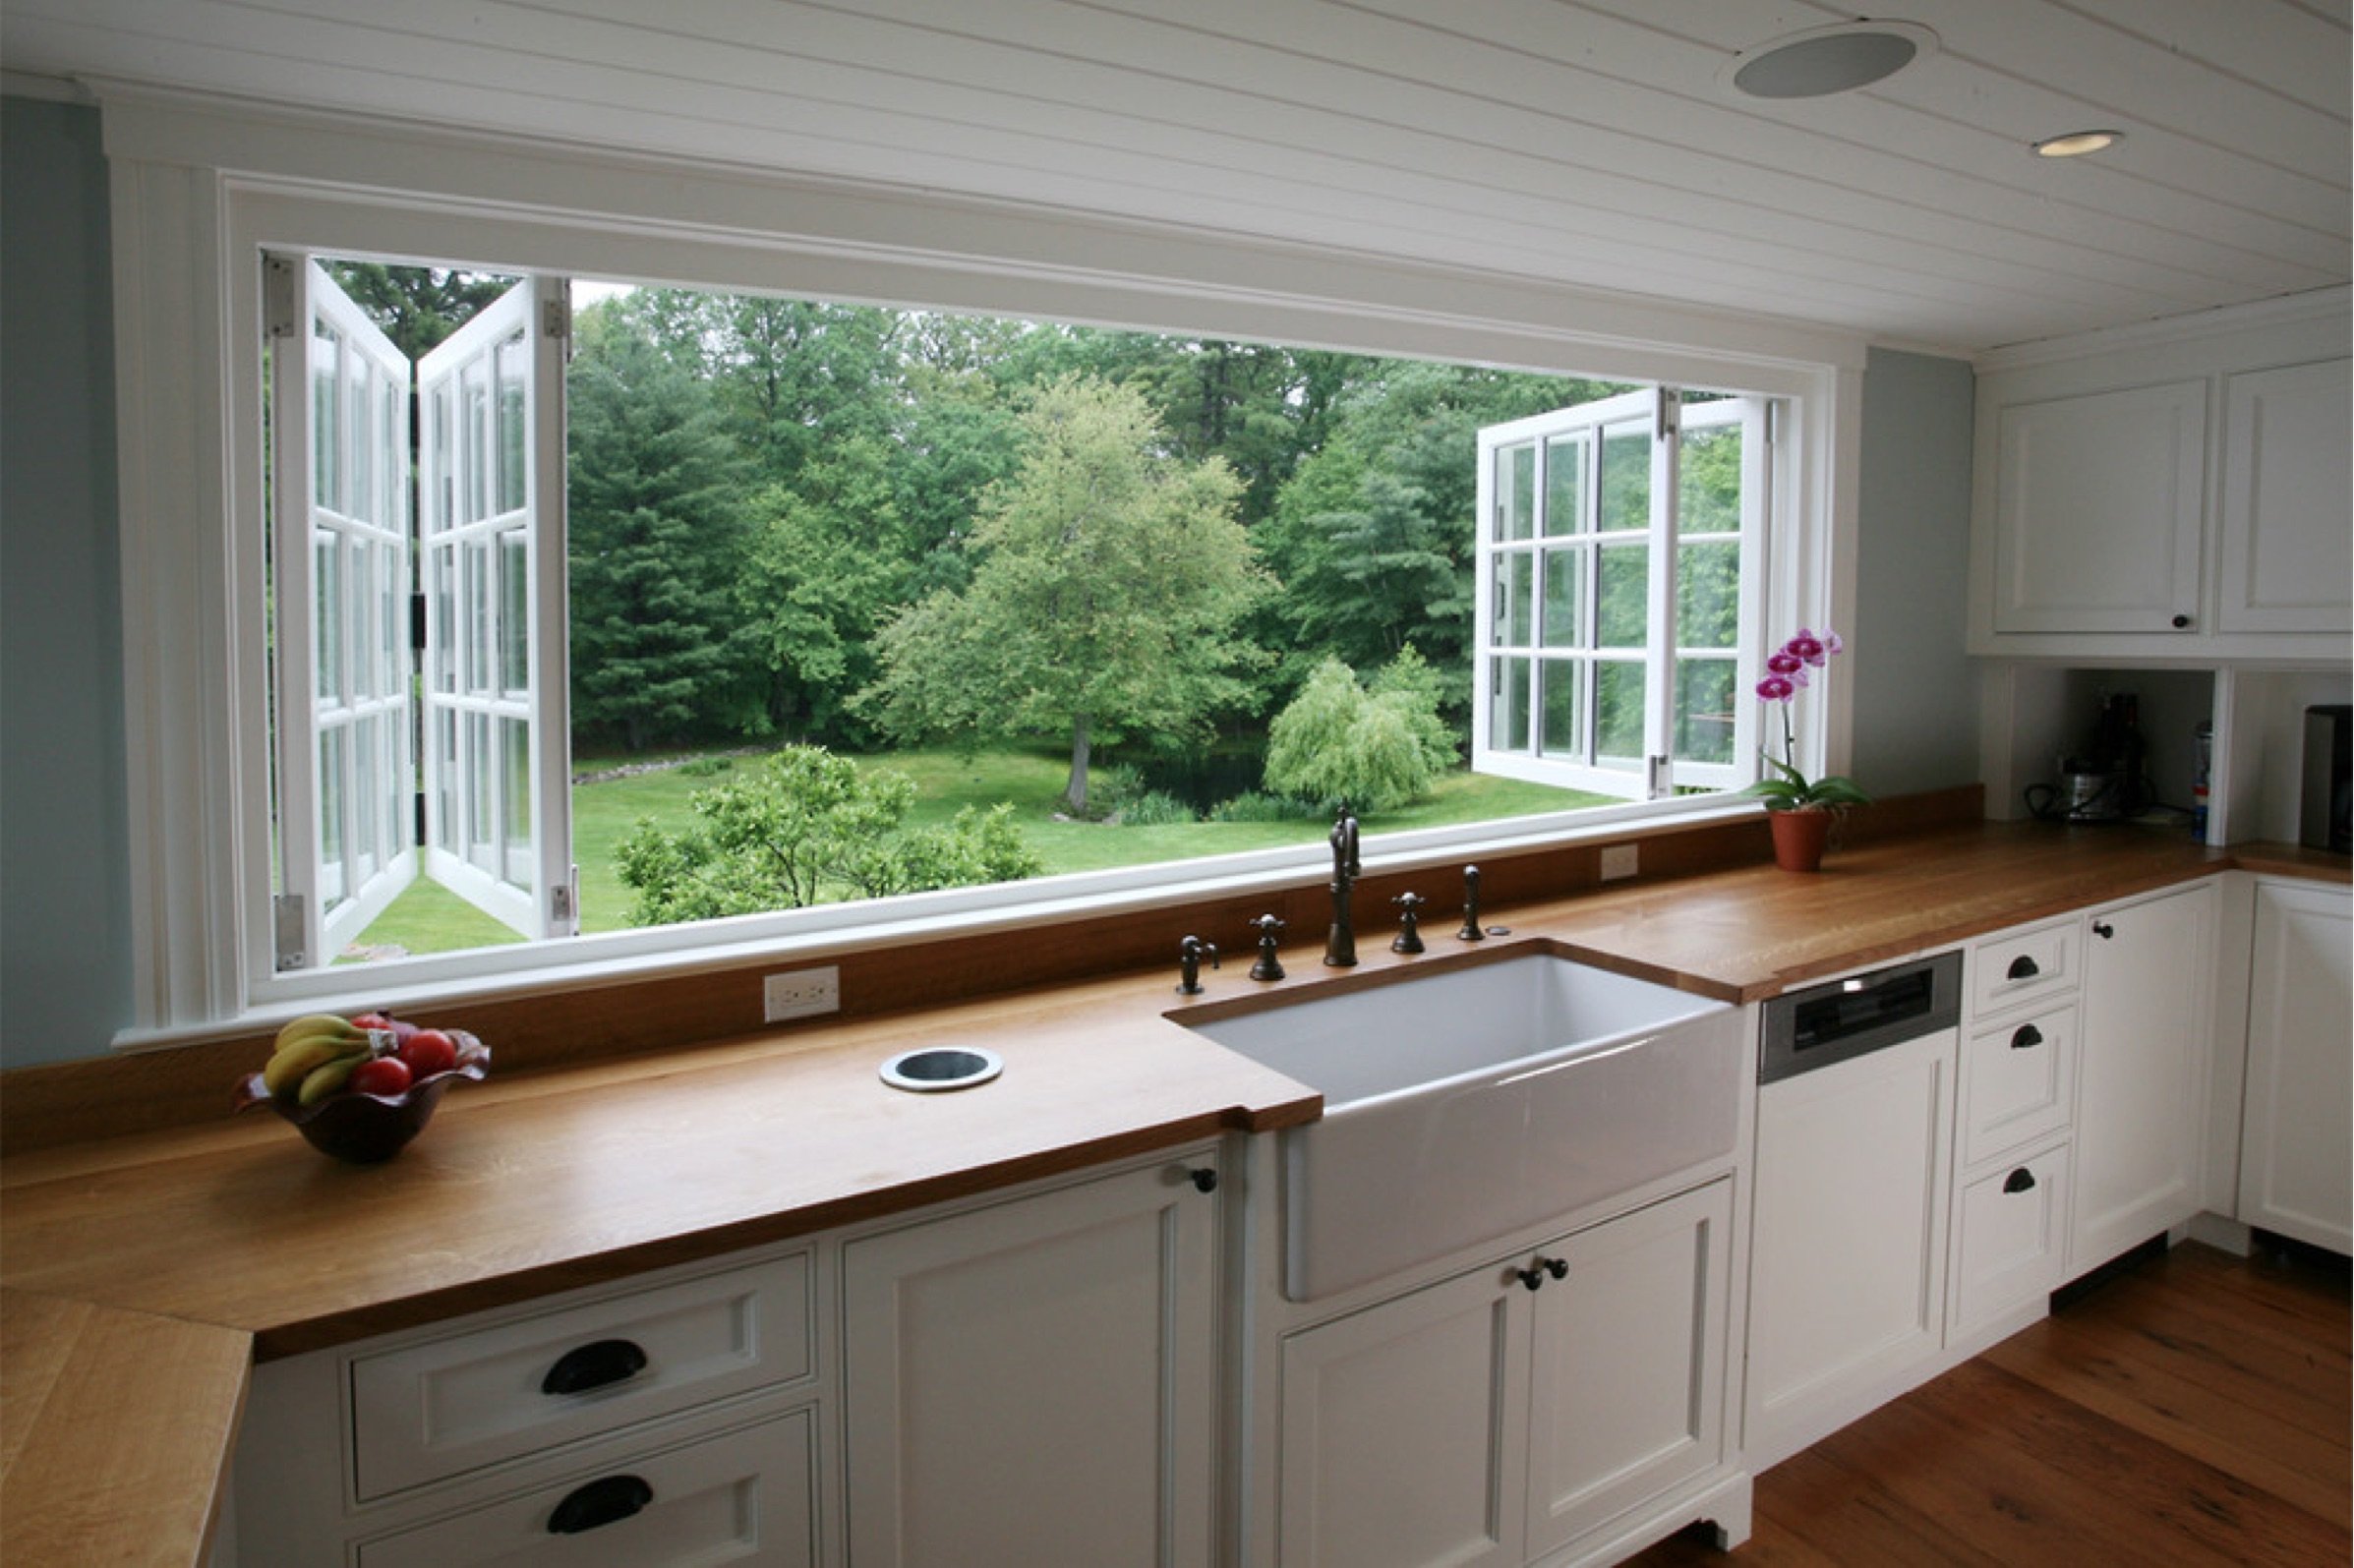 Corner view. Кухня с большими окнами. Кухня с мойкой у окна в доме. Кухня с окном в частном доме. Планировка кухни с большим окном.